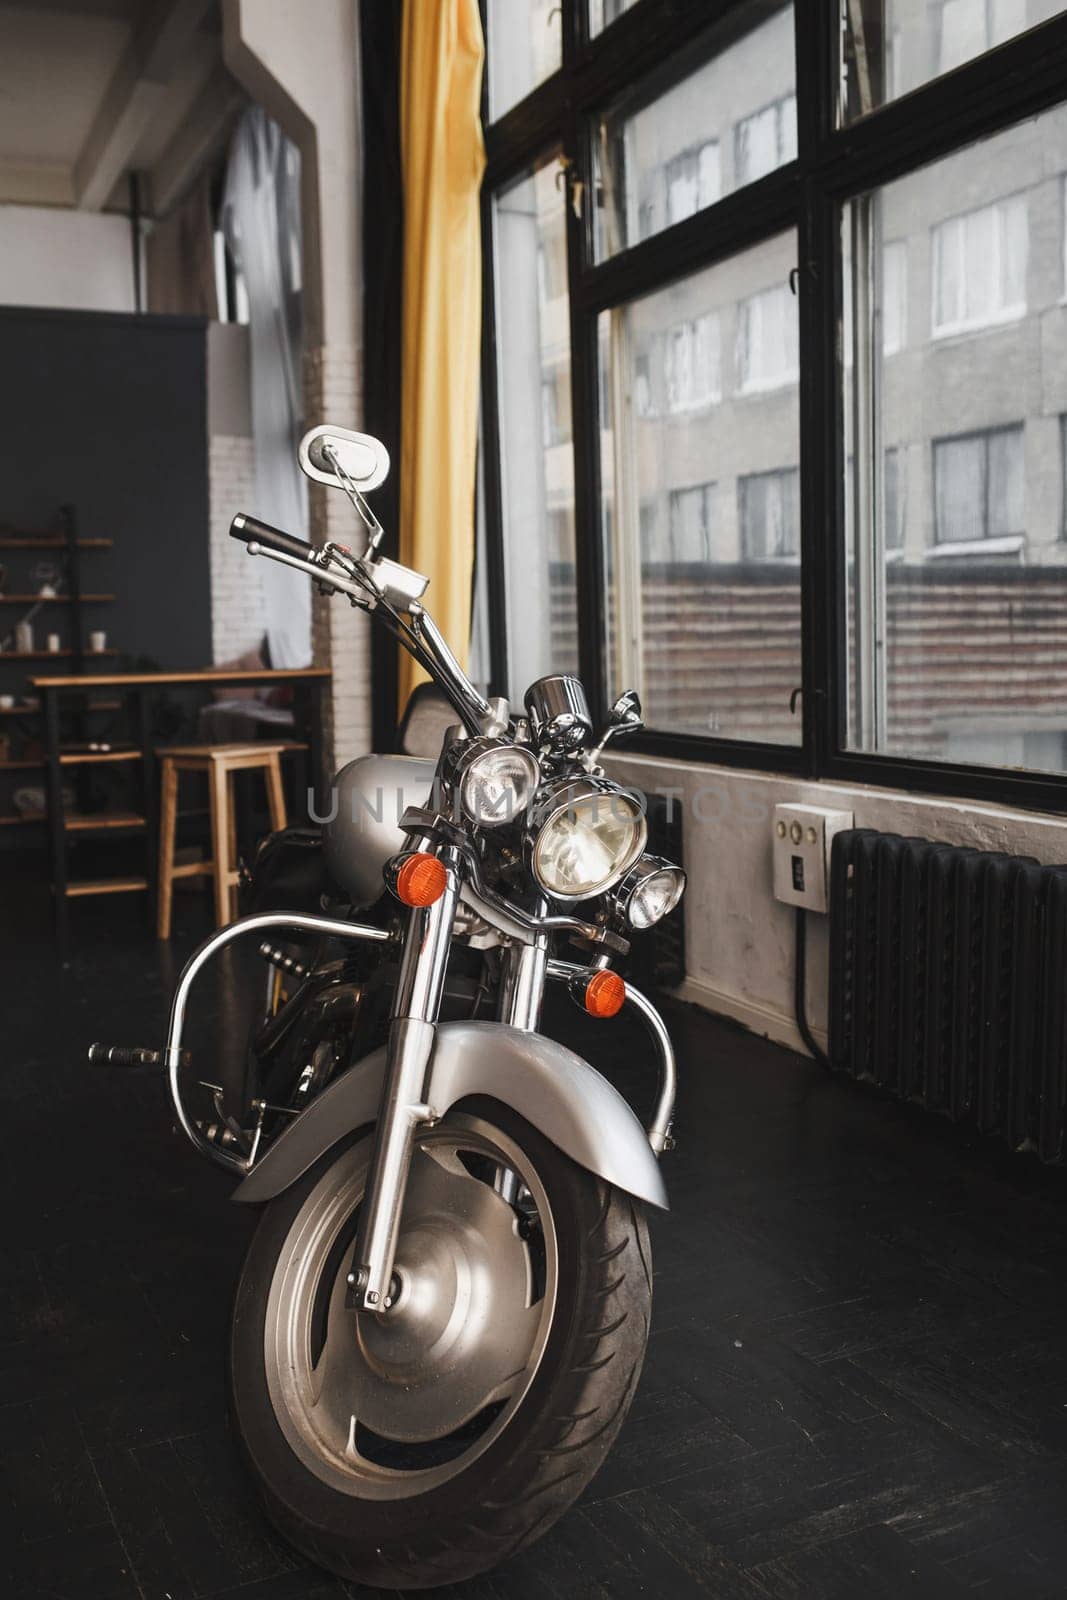 Vintage style motorcycle in customs garage